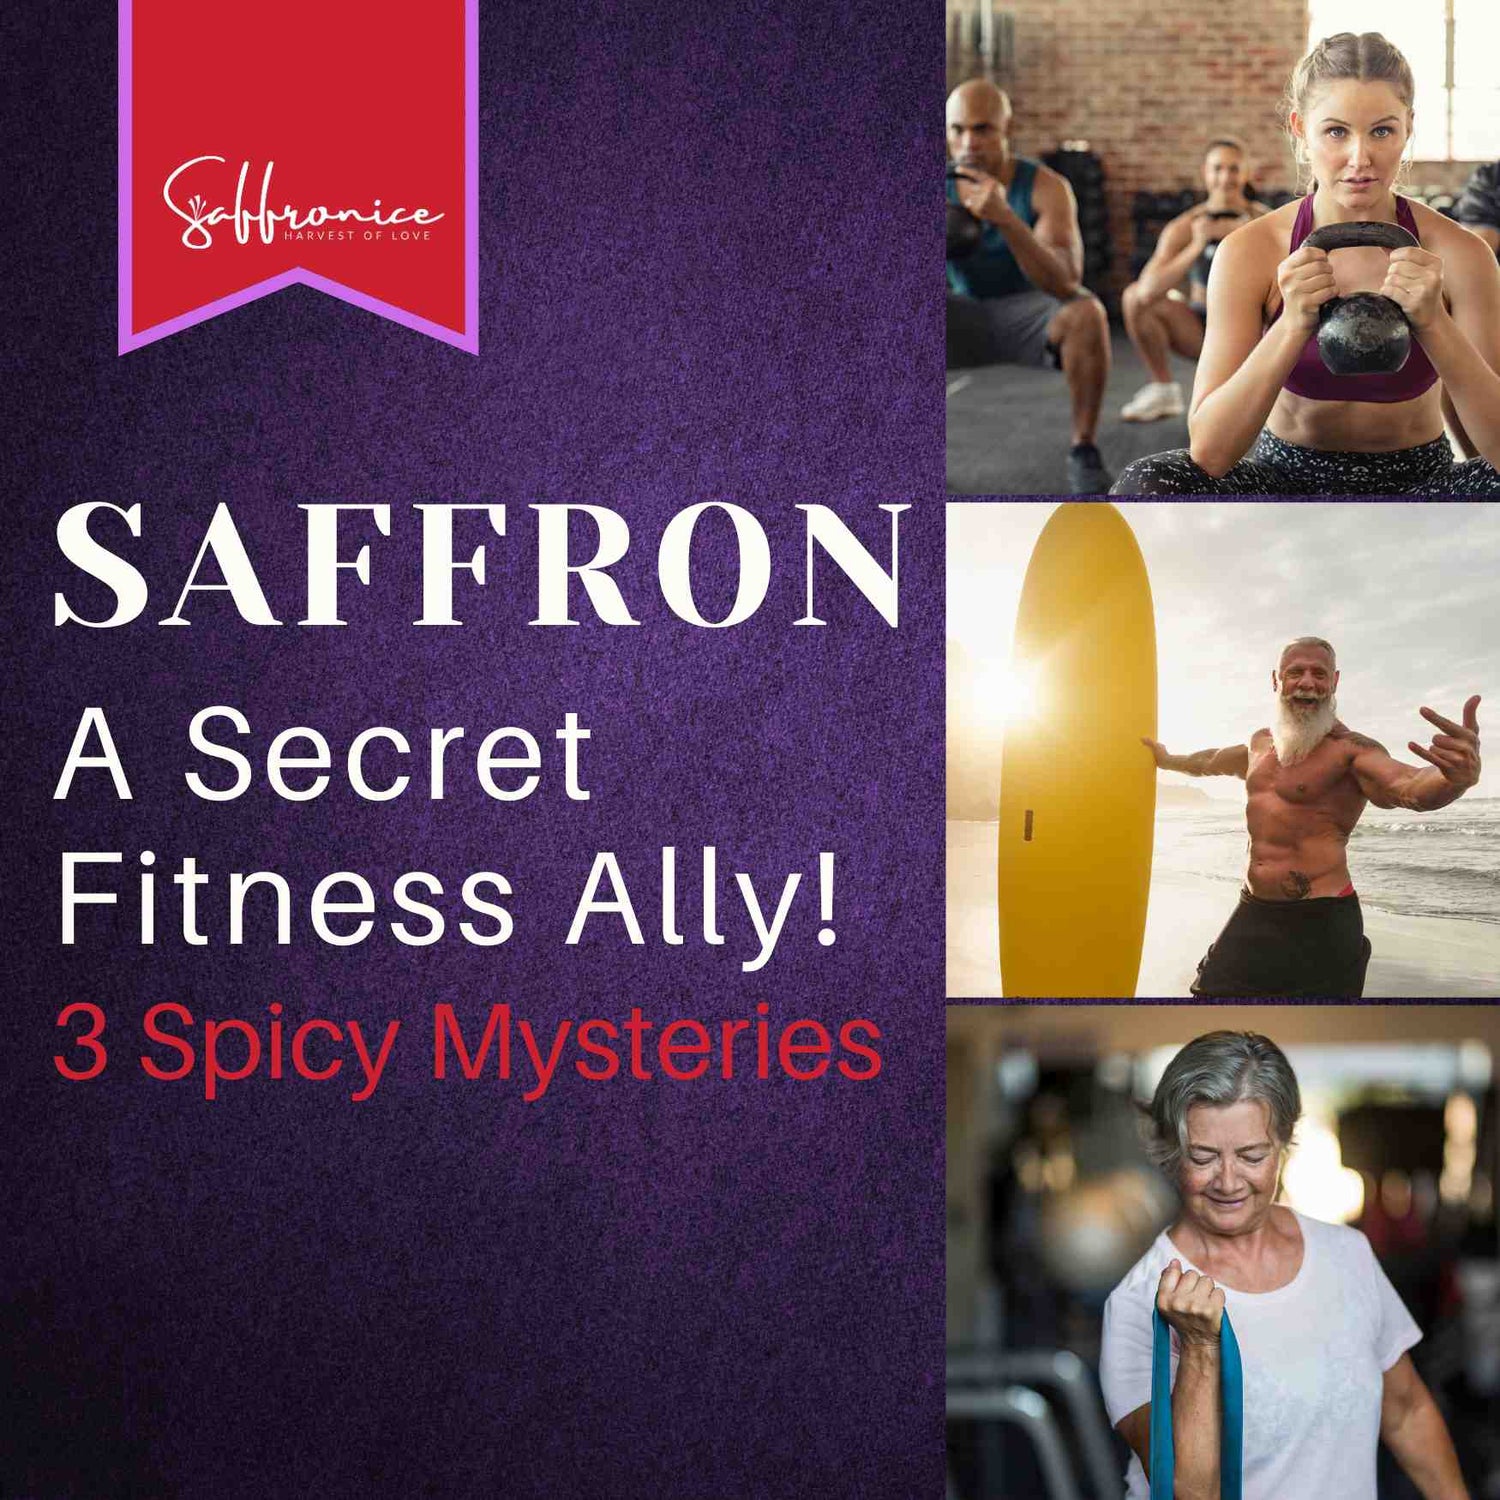 Secrets of saffron in fitness